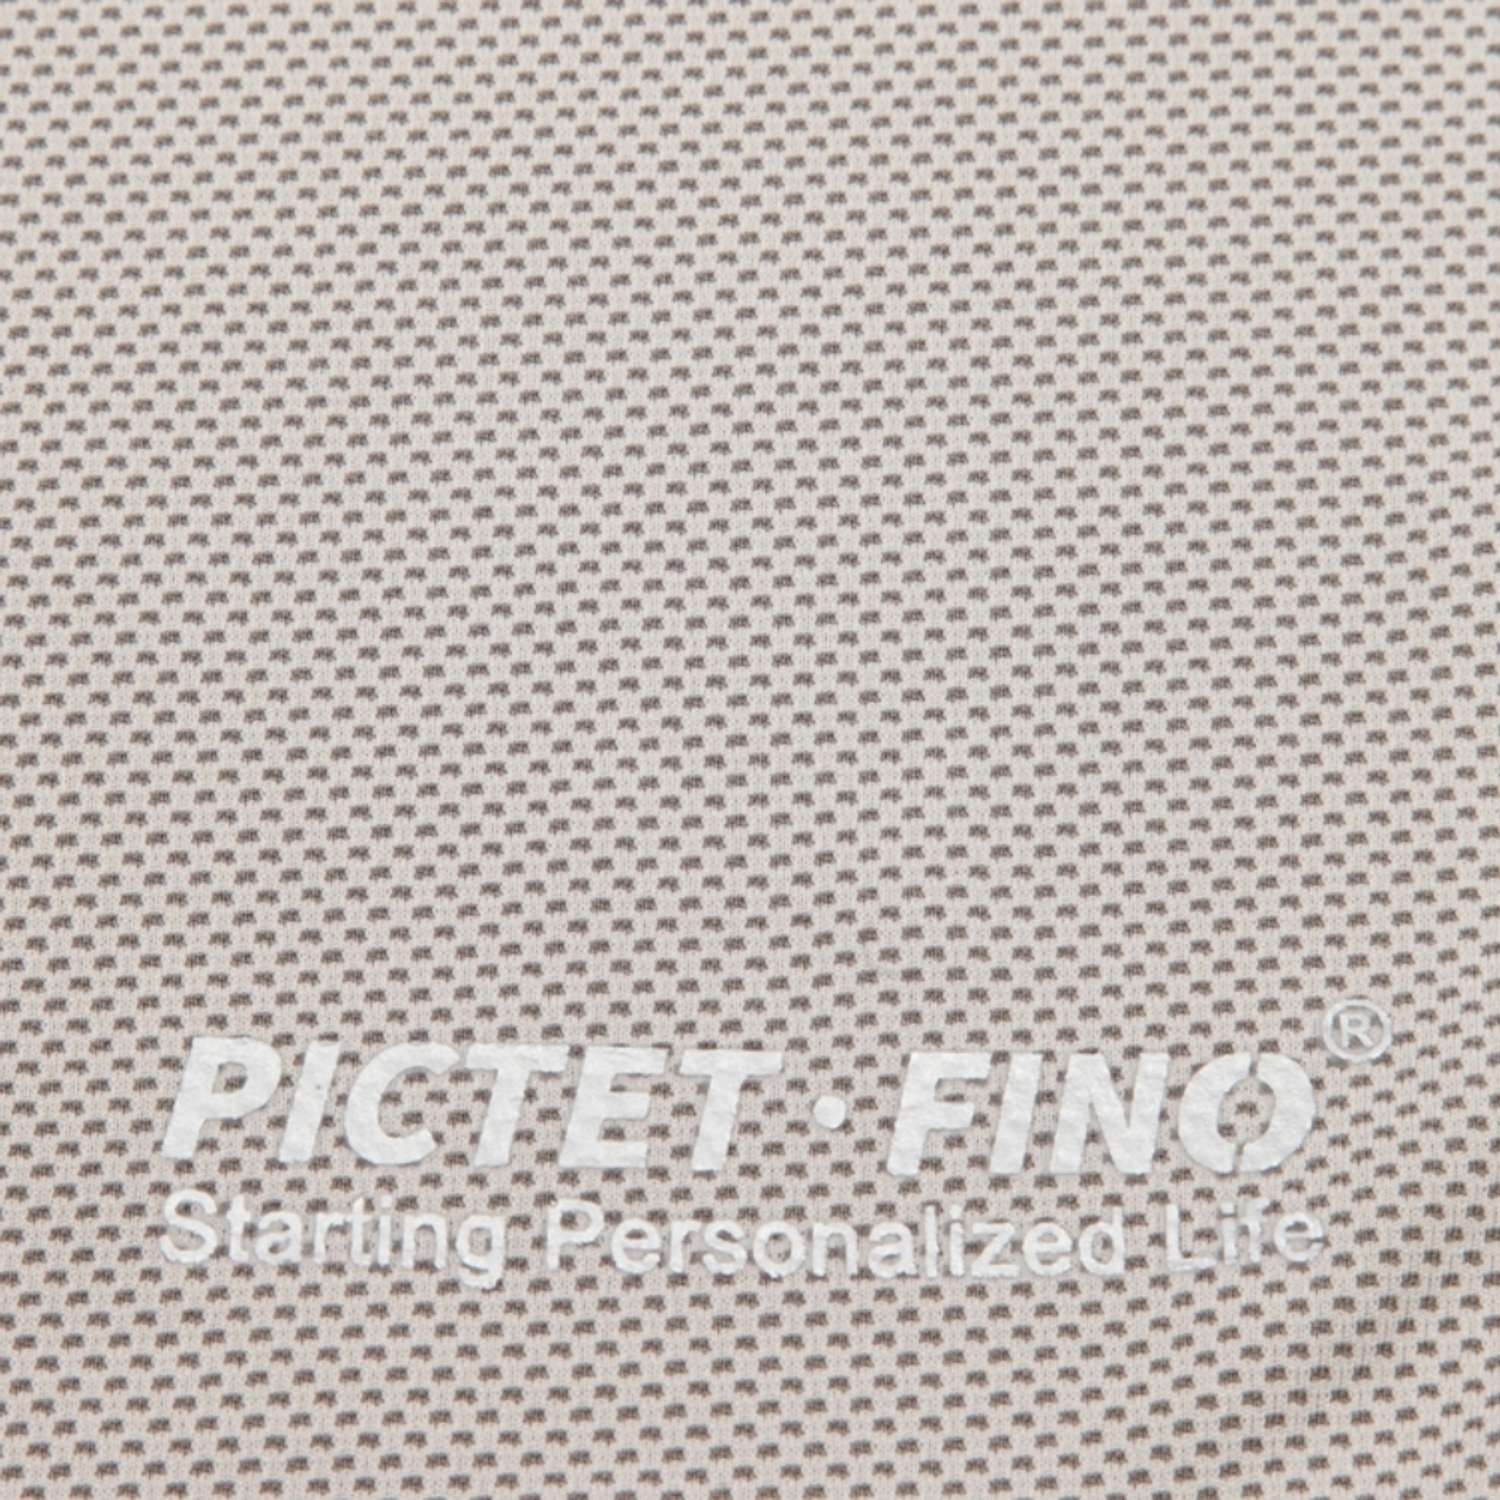 Спортивное полотенце PICTET FINO охлаждающее серое в пластиковой банке - фото 3